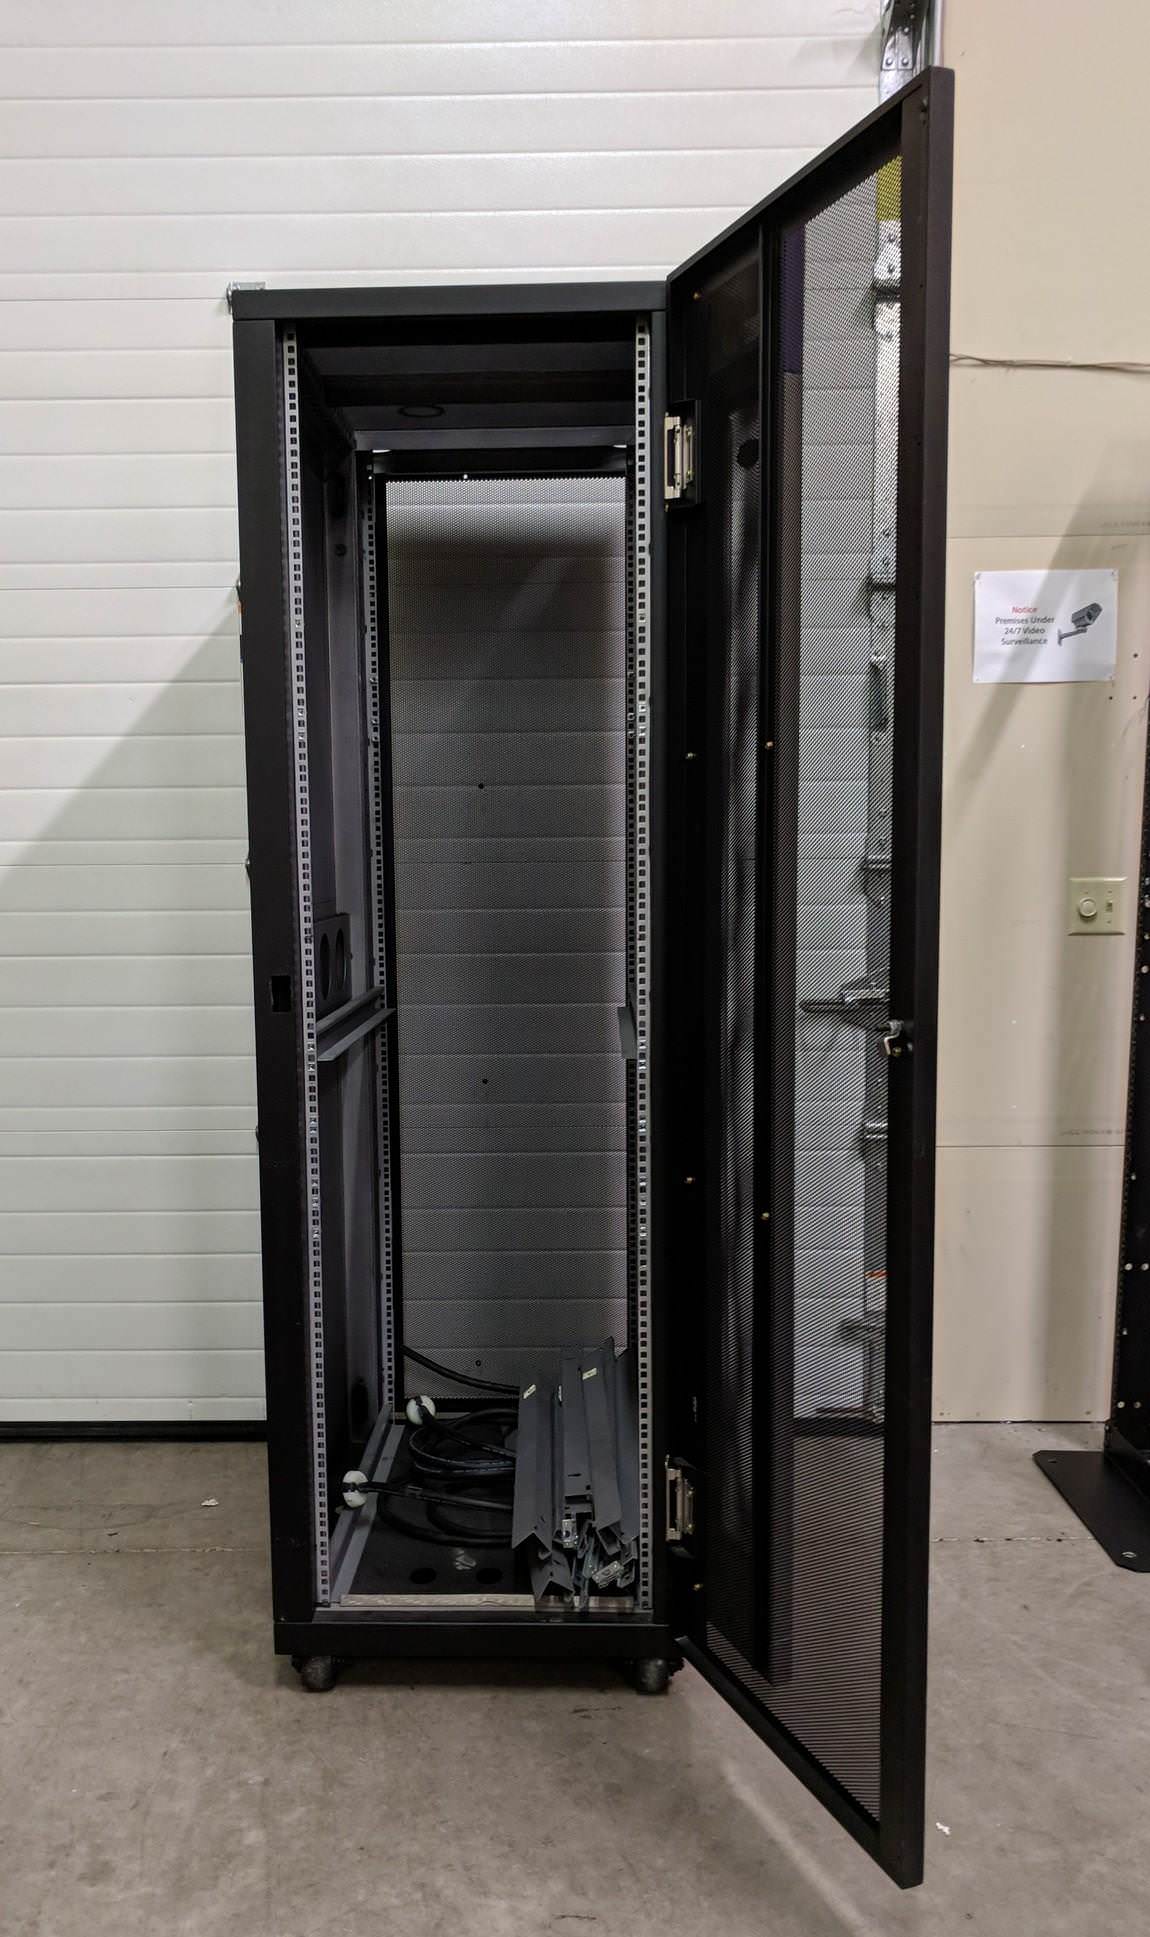 StorageTek Engenio Black Metal Server Rack